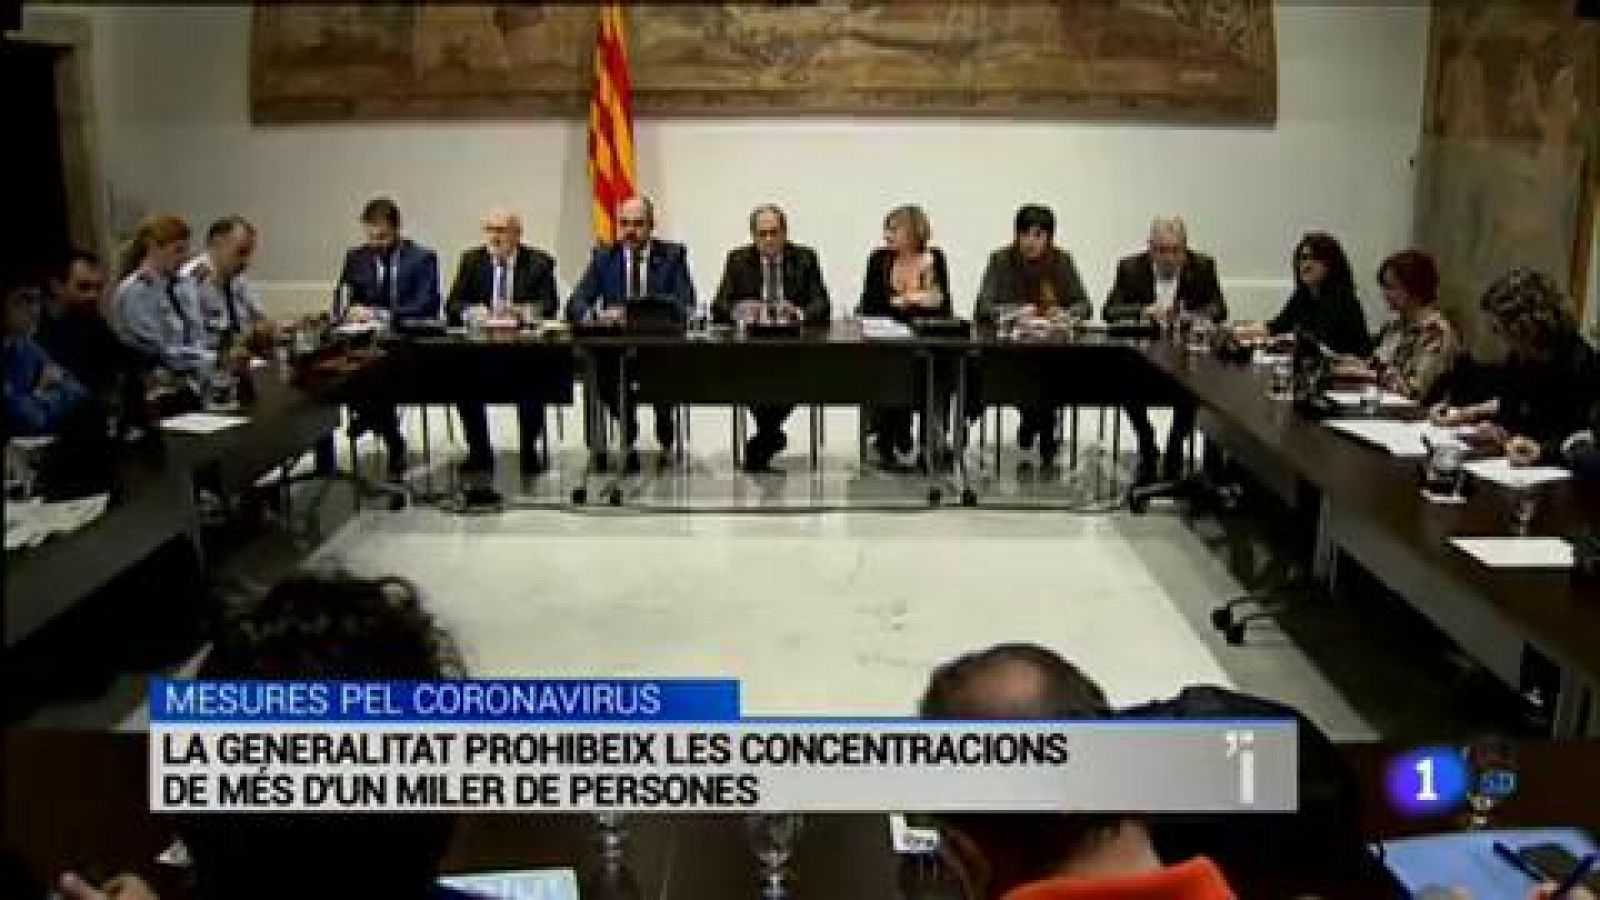 L'Informatiu | Sumari de les notícies del 11/03/2020 - RTVE.es